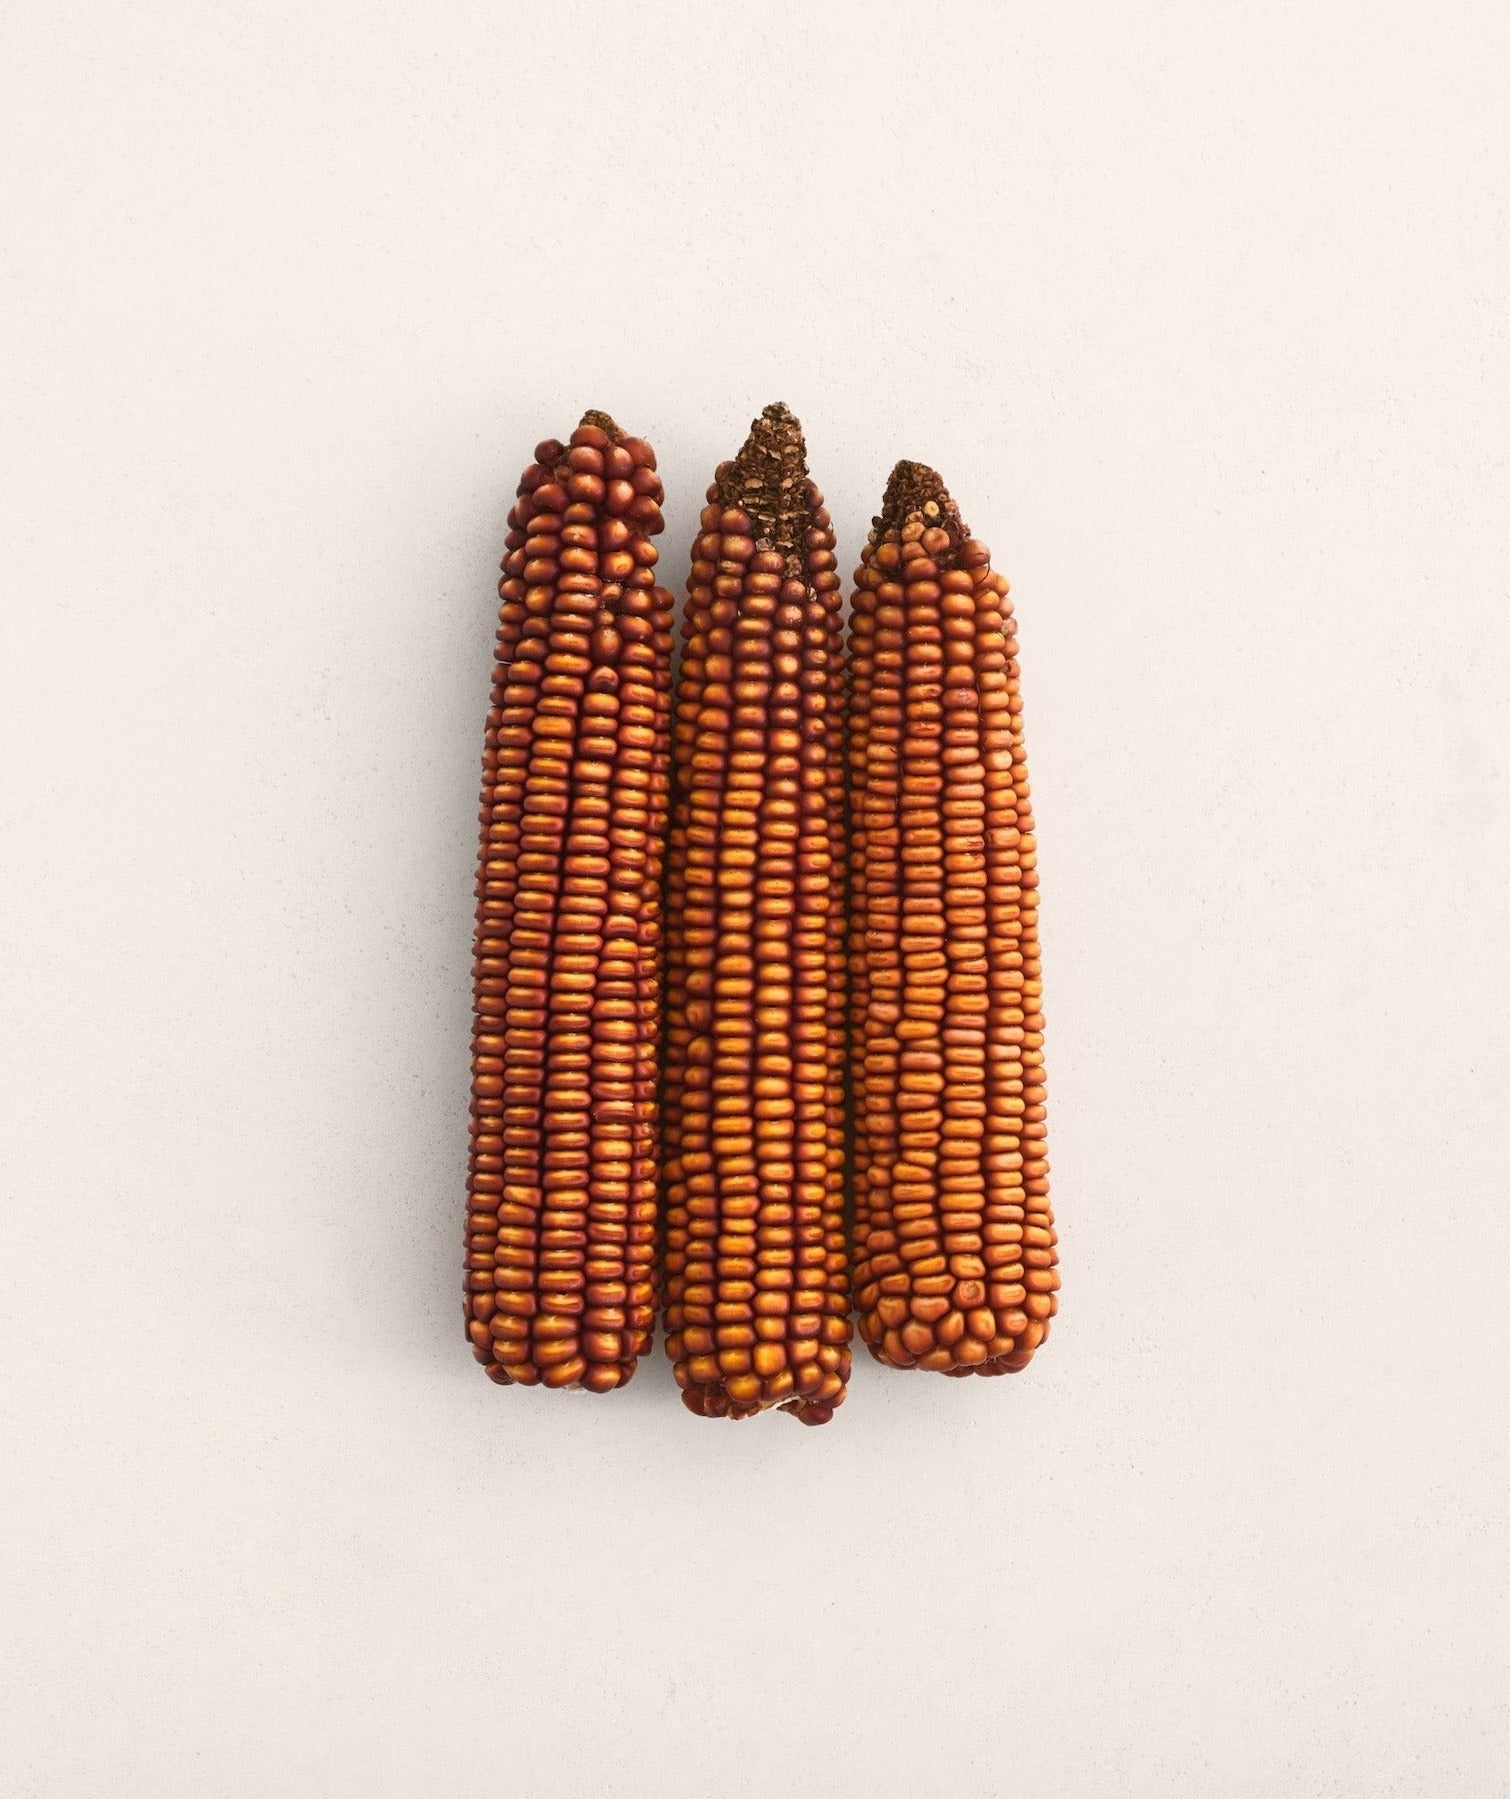 Maize ‘Choice’ Seeds